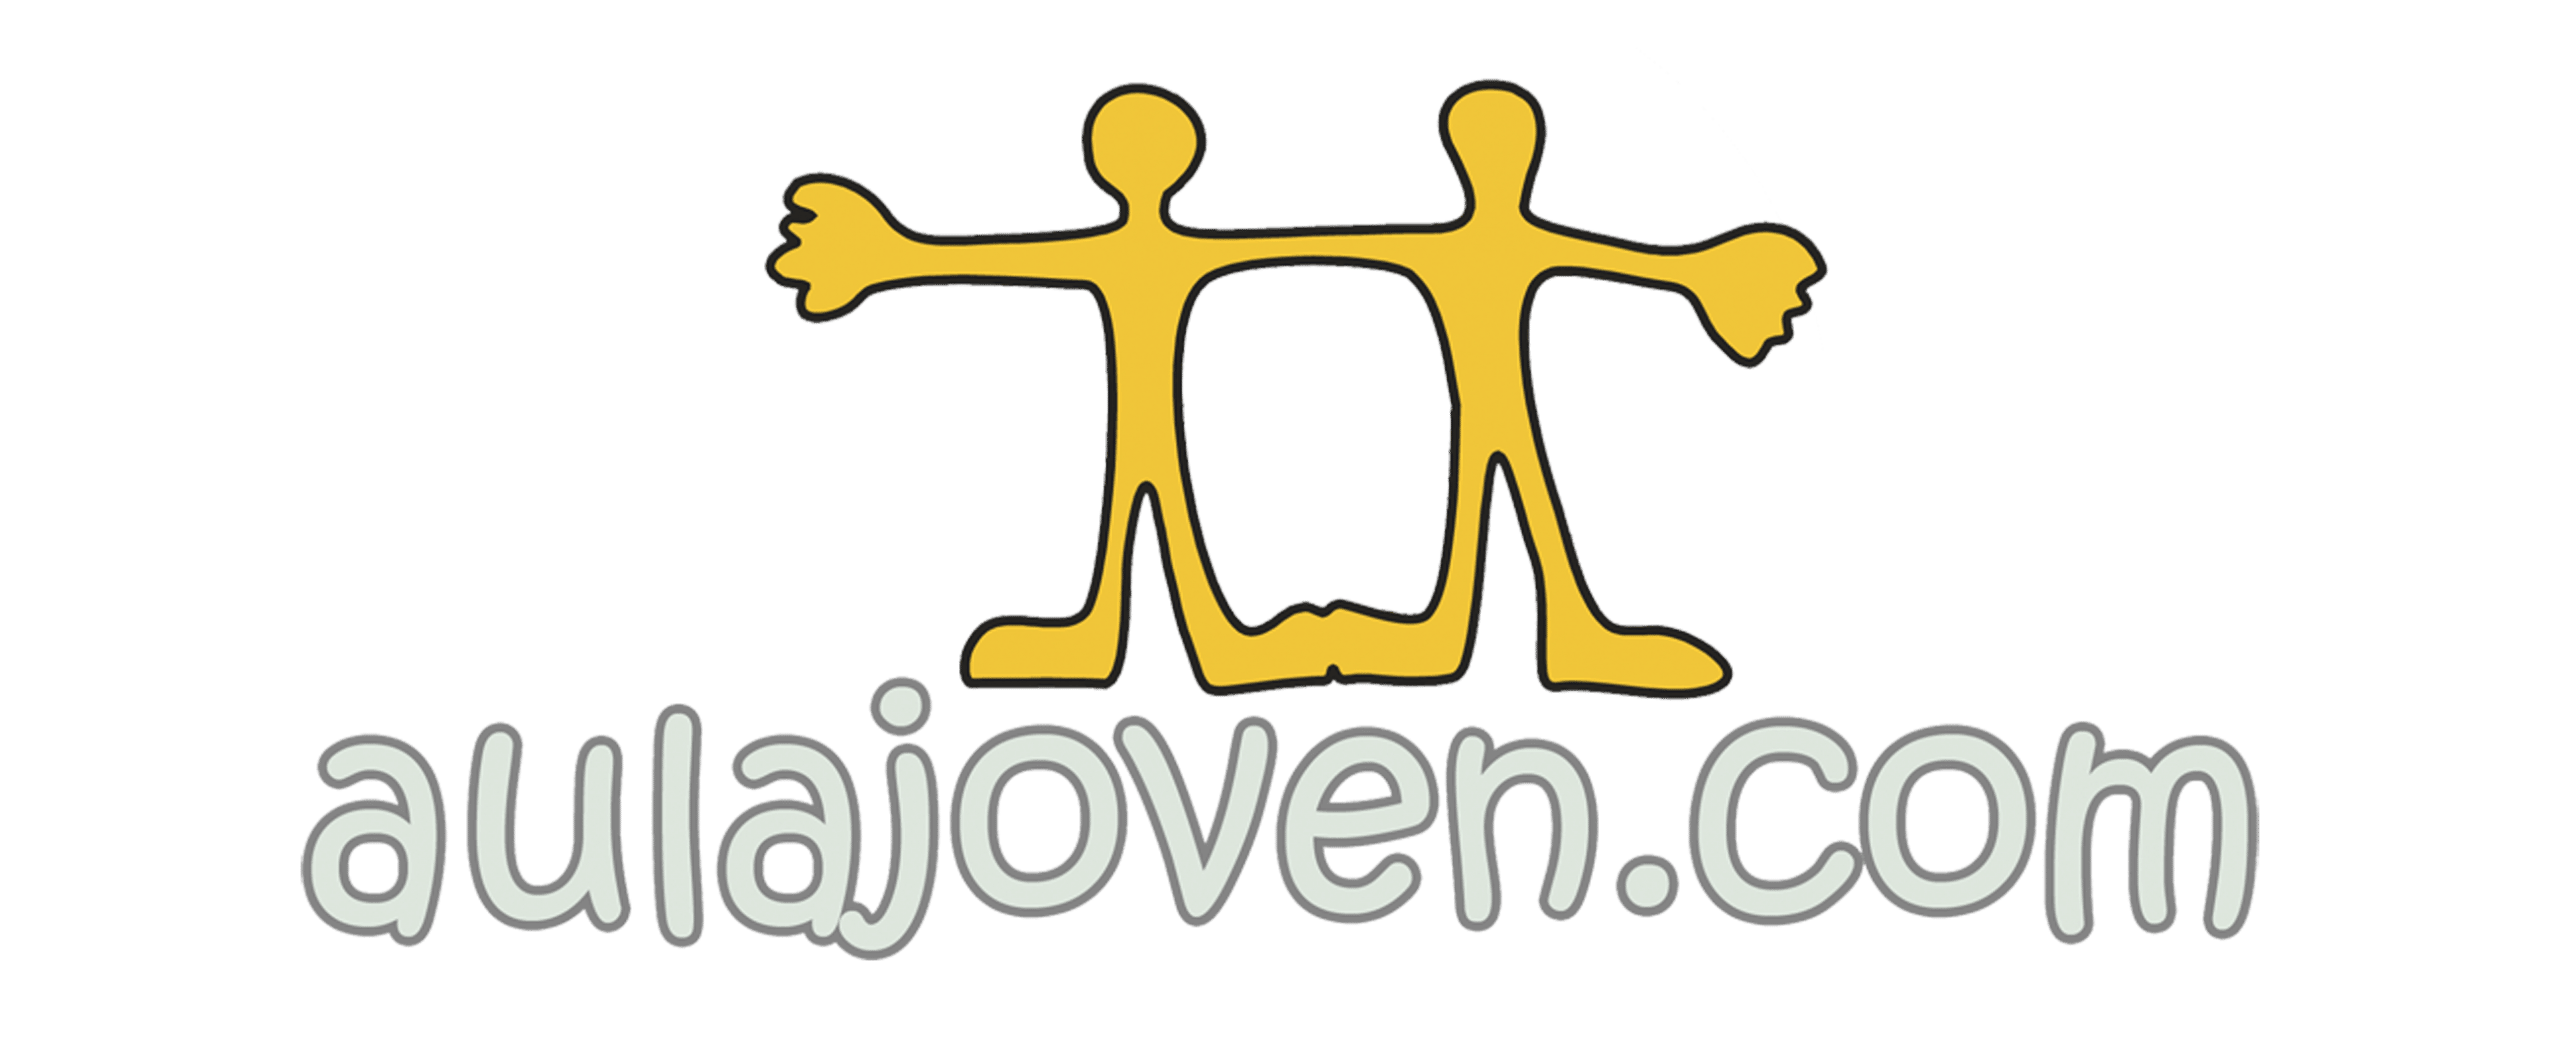 Logo_aulajoven_vectorial-b6d07e45